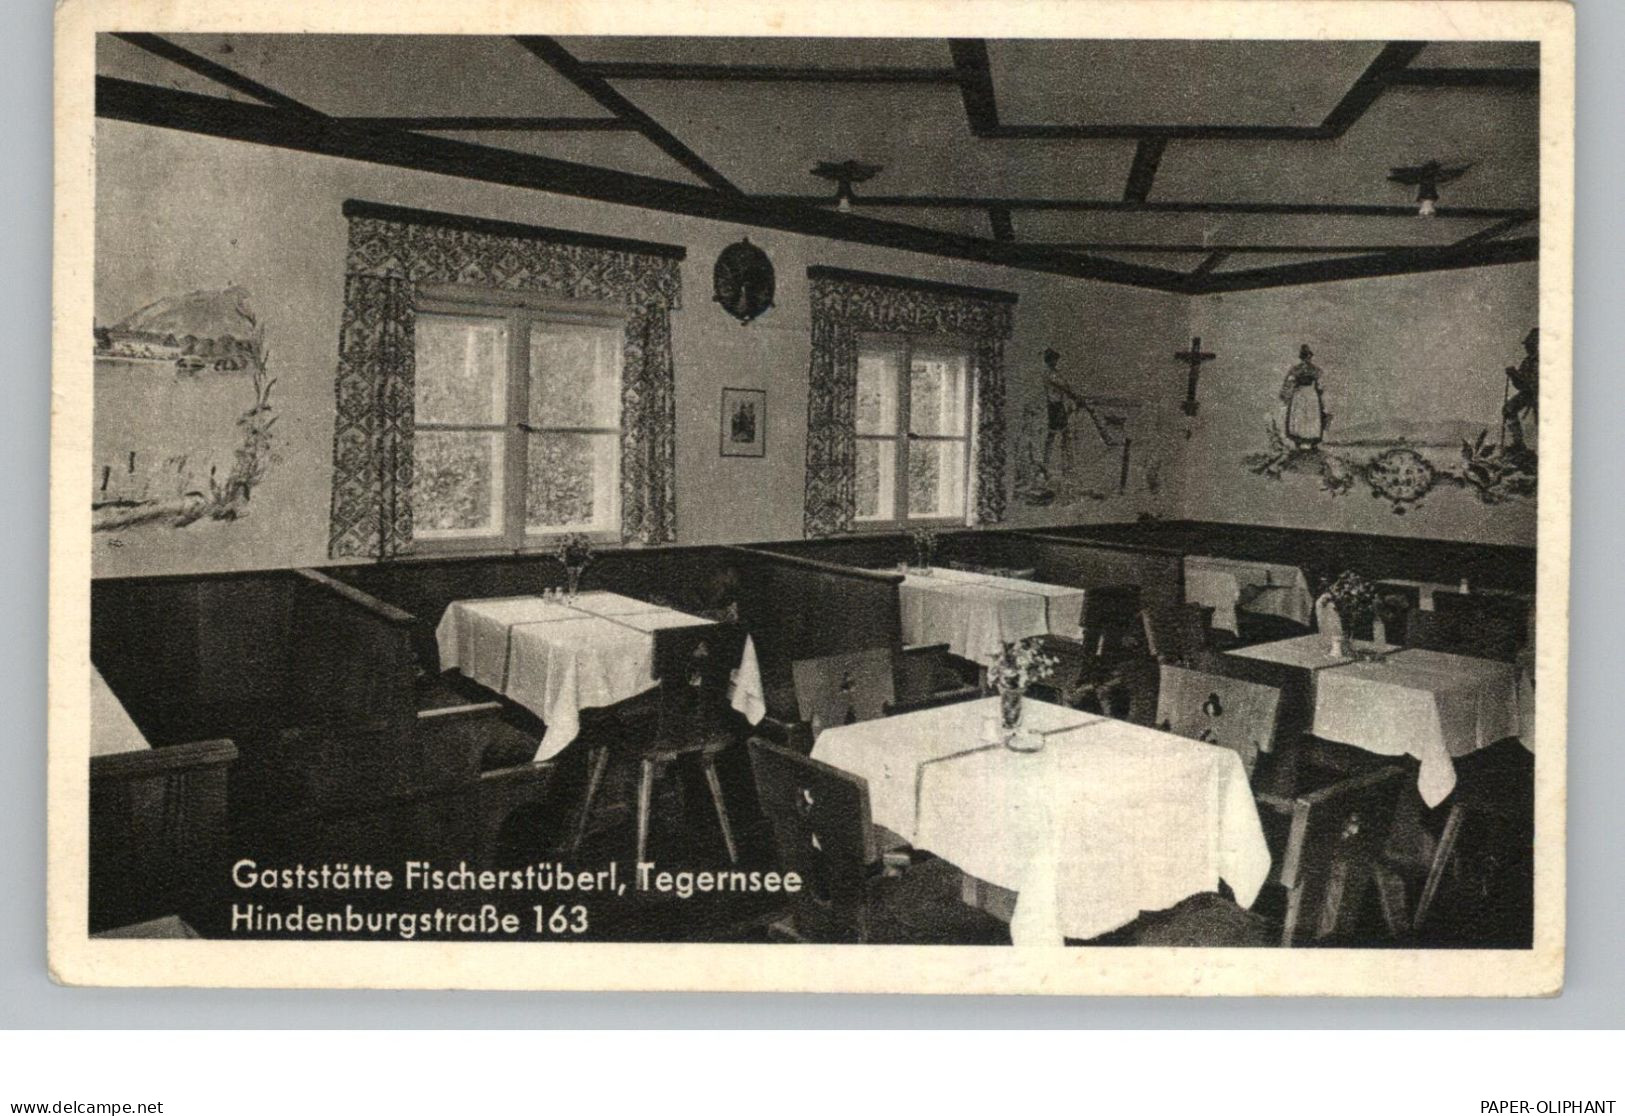 8180 TEGERNSEE, Gaststätte Fischerstüberl, Hindenburgstrasse, Innenansicht, 1950 - Tegernsee